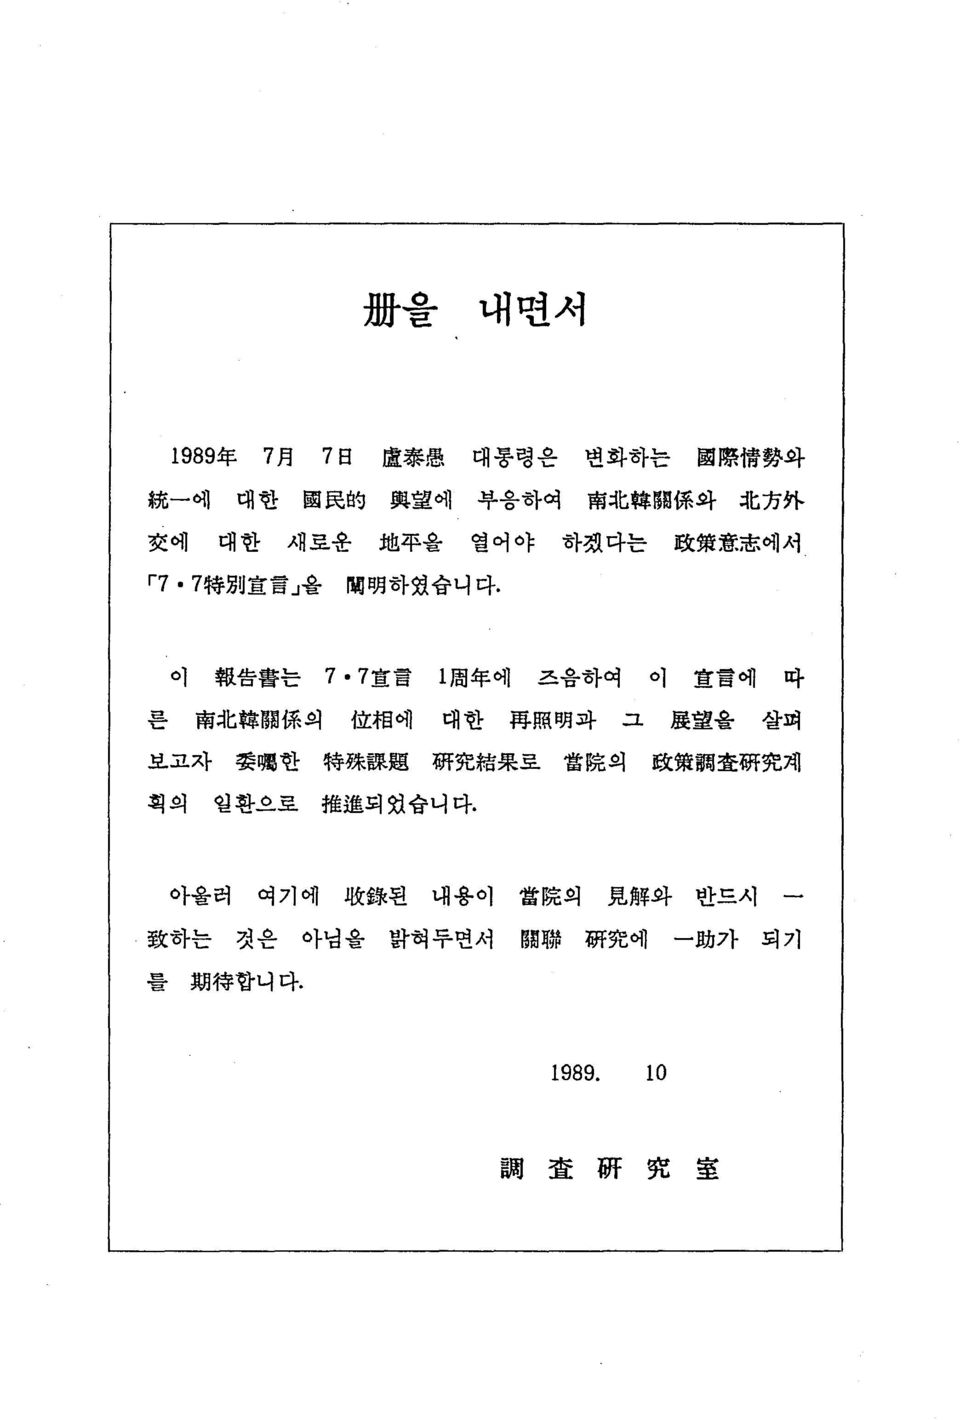 7 宣 言 l 周 年 에 즈출하여 이 宣 言 에 따 른 南 北 韓 關 係 의 位 相 에 대한 再 照 明 과 그 麗 望 을 살펴 보고자 g 囑 한 特 殊 課 題 硏 究 結 果 로 當 院